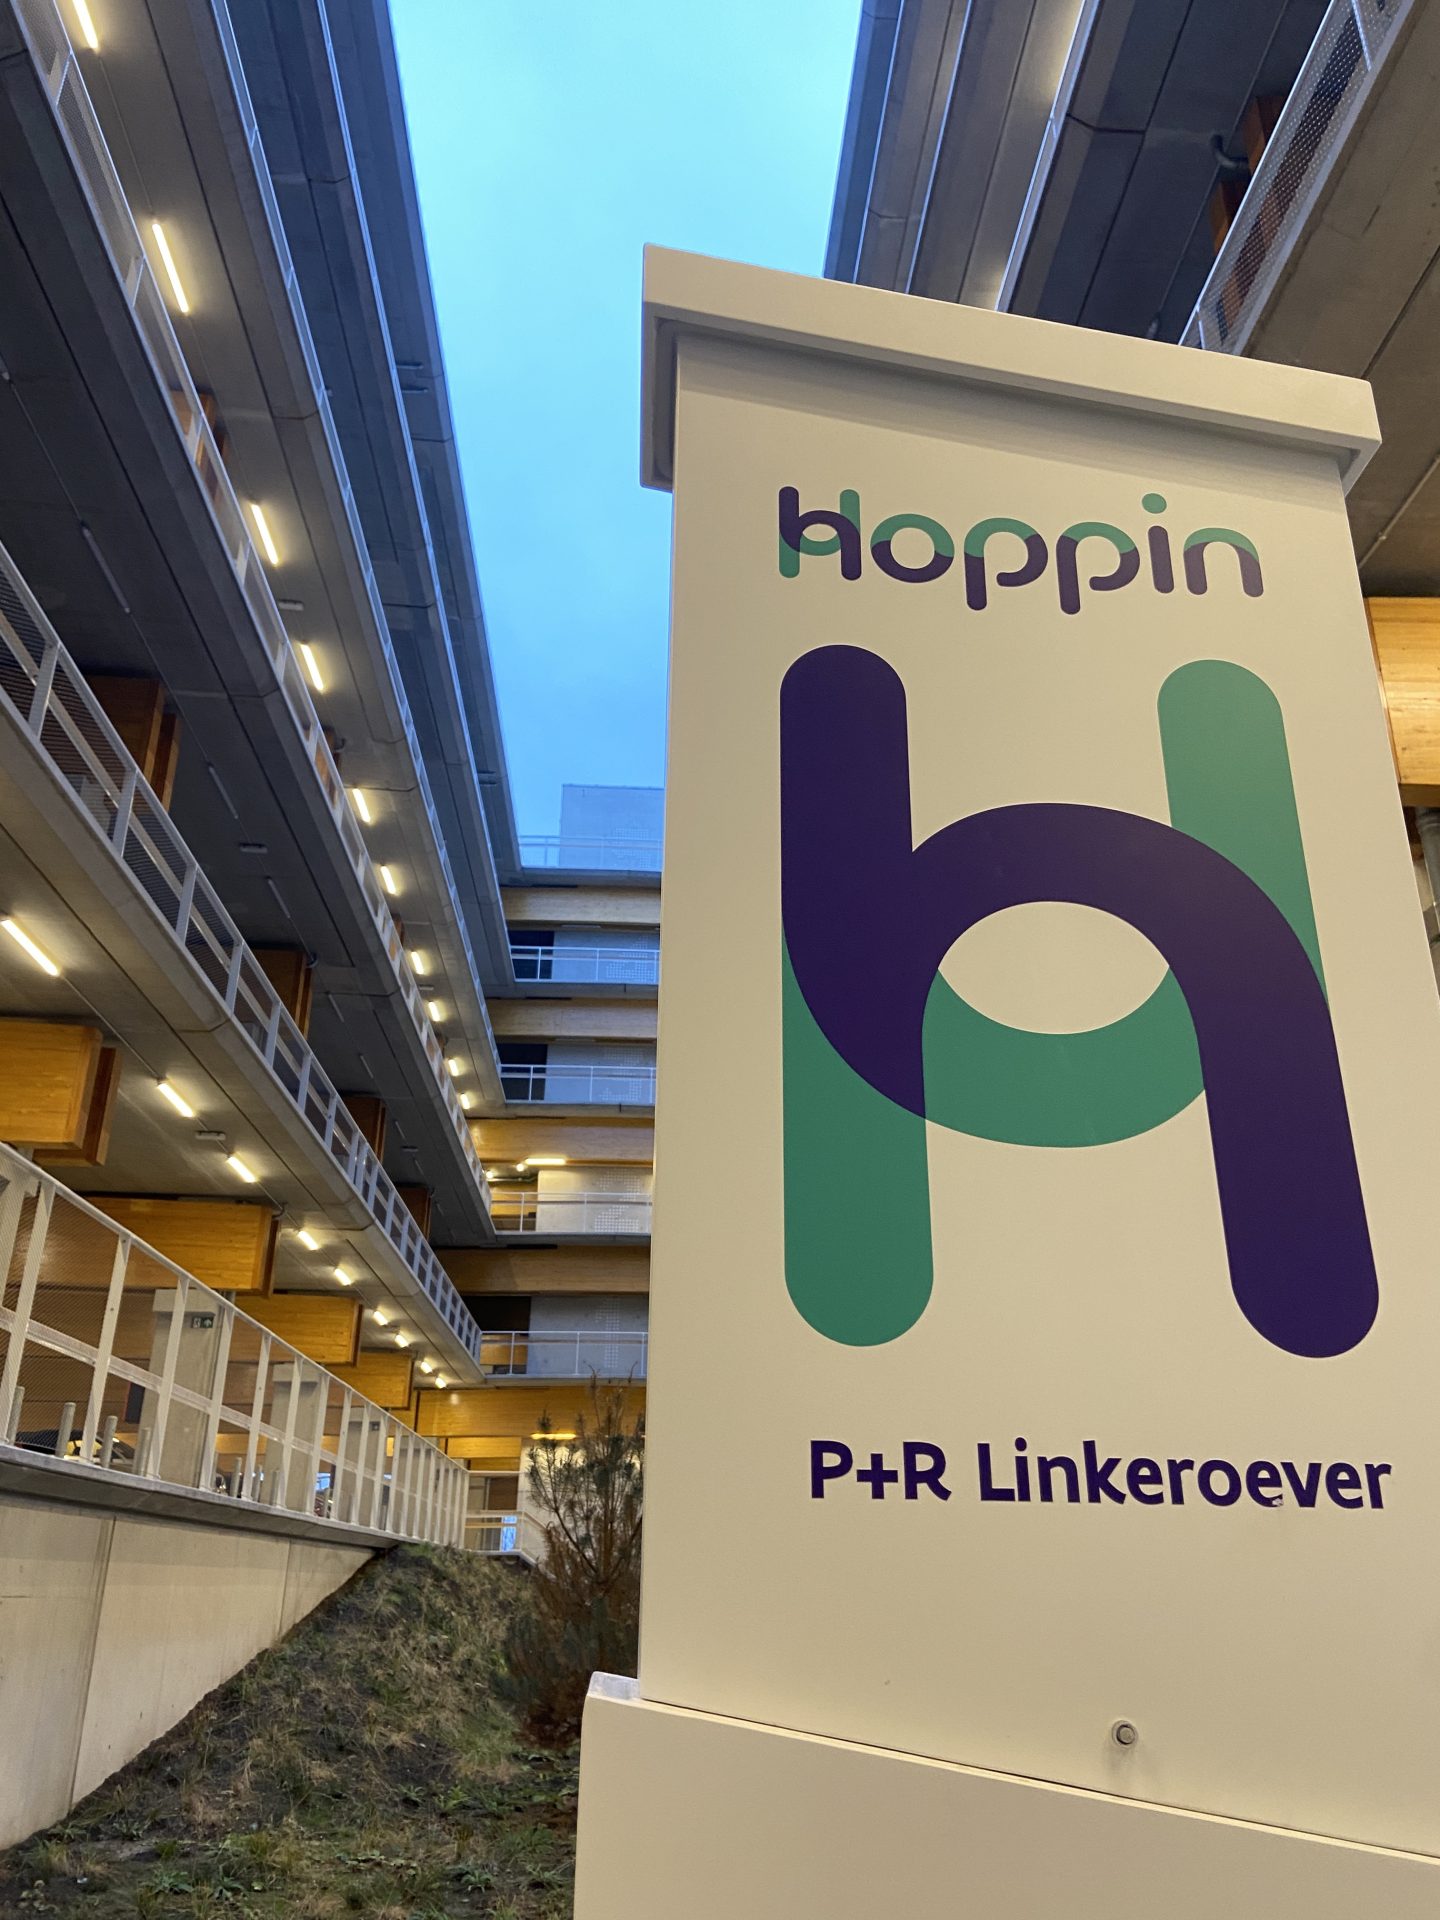 Opening nieuwste Hoppinpunt: P+R Linkeroever